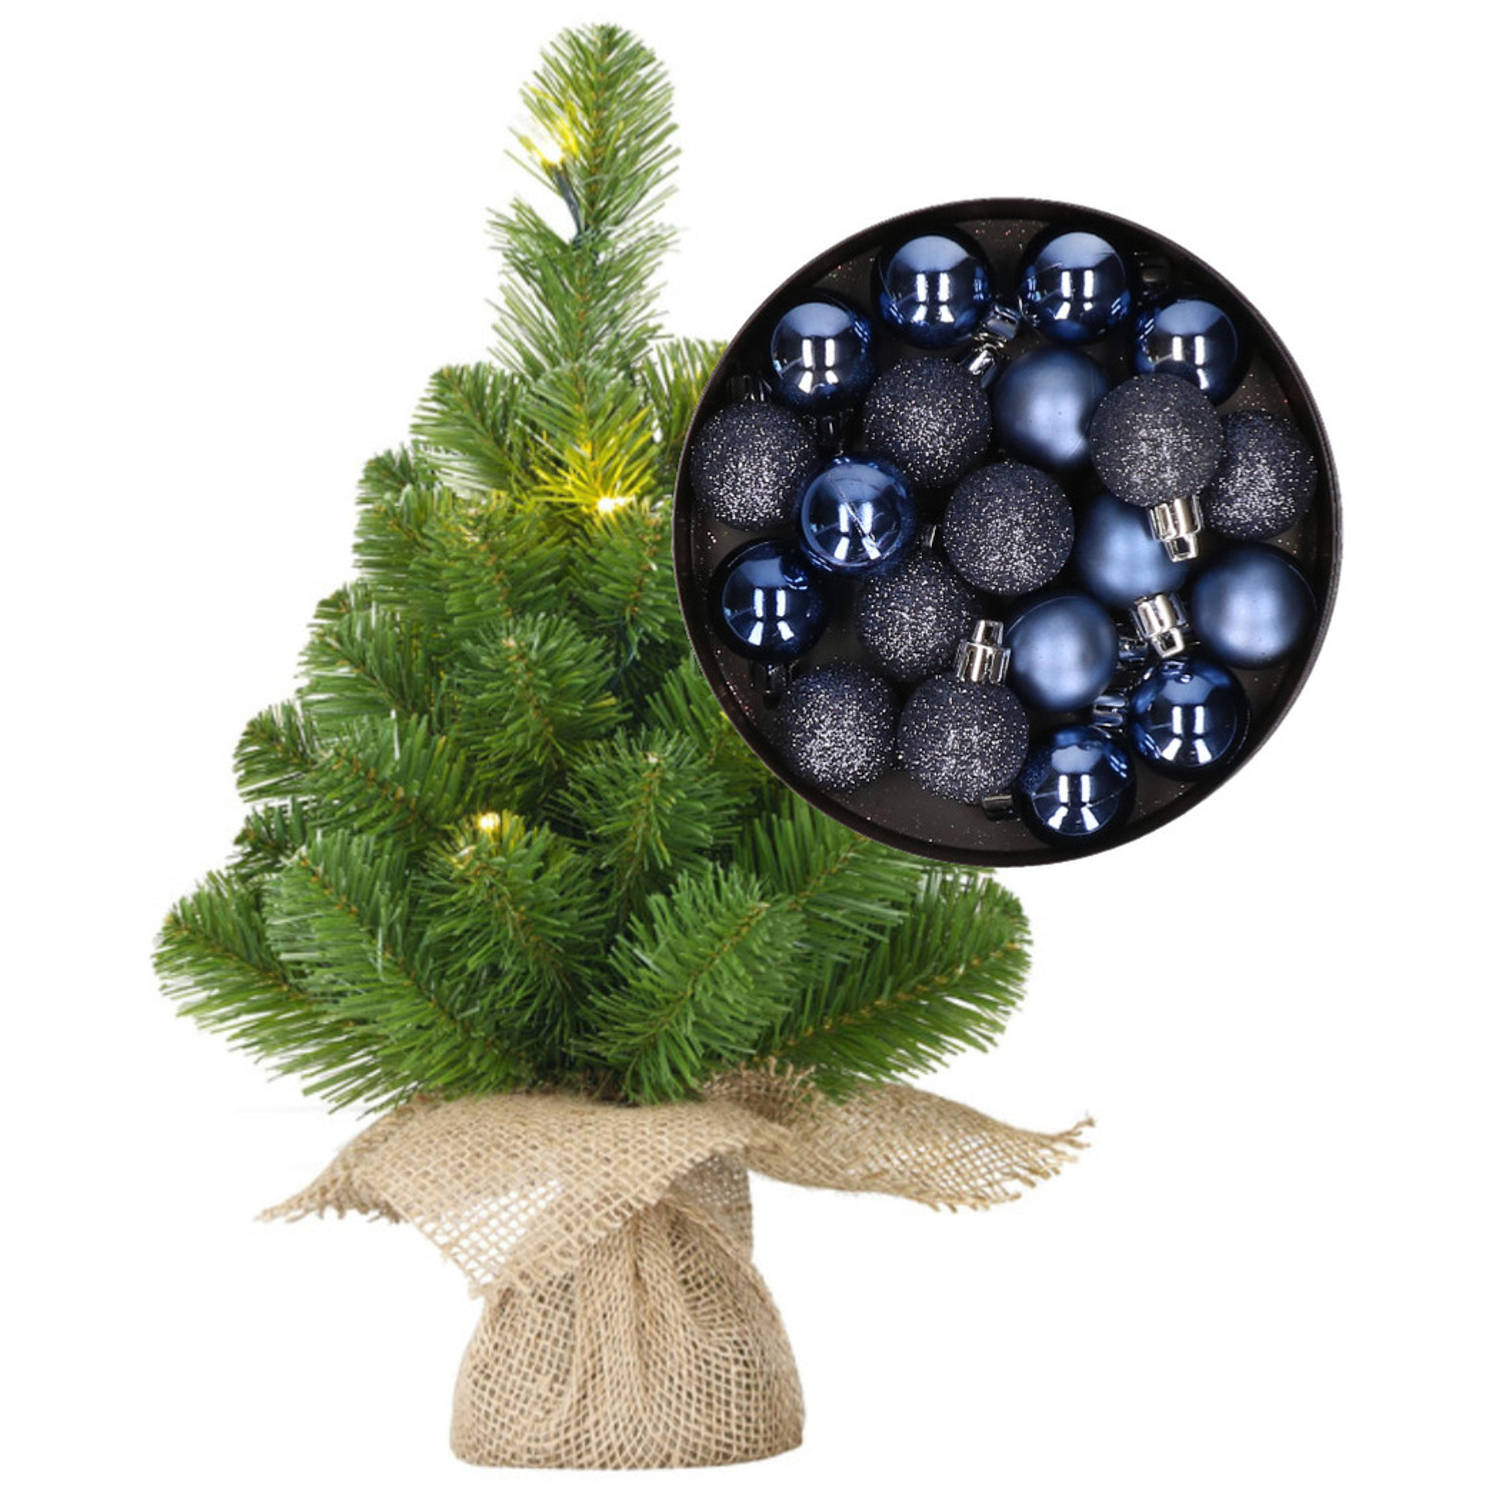 Mini kerstboom-kunstboom met verlichting 45 cm en inclusief kerstballen donkerblauw Kunstkerstboom